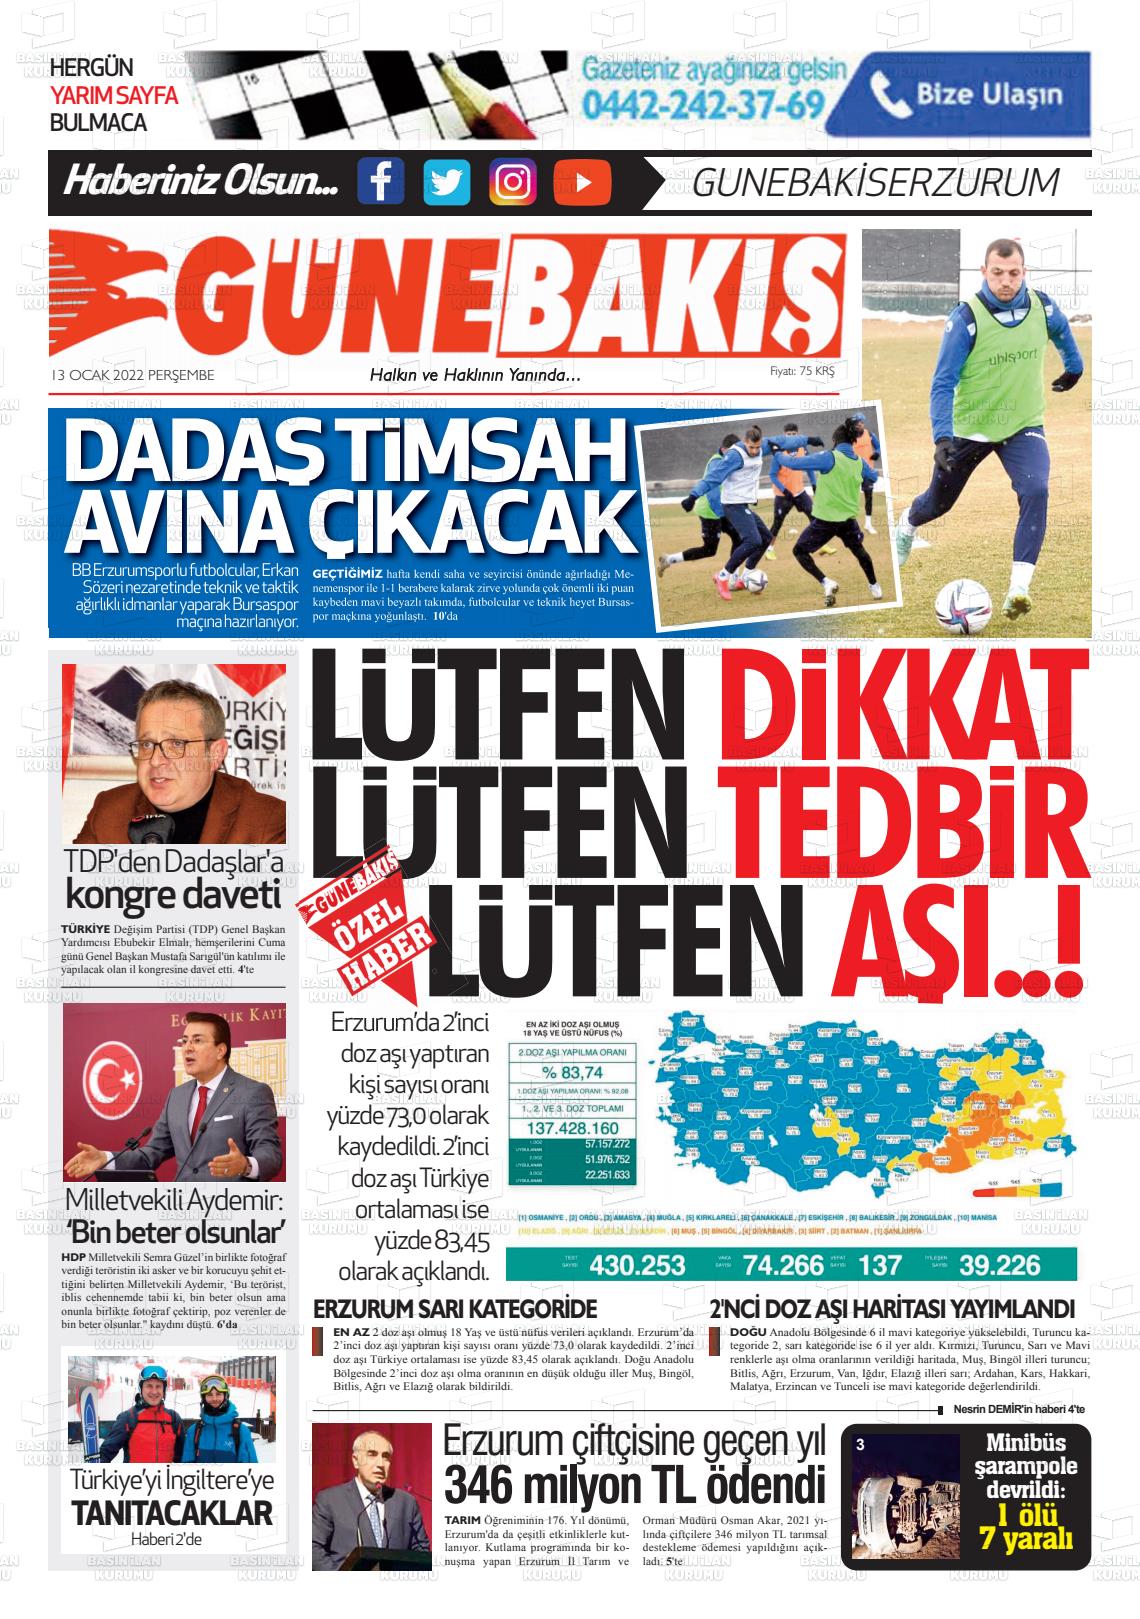 13 Ocak 2022 Erzurum Günebakış Gazete Manşeti